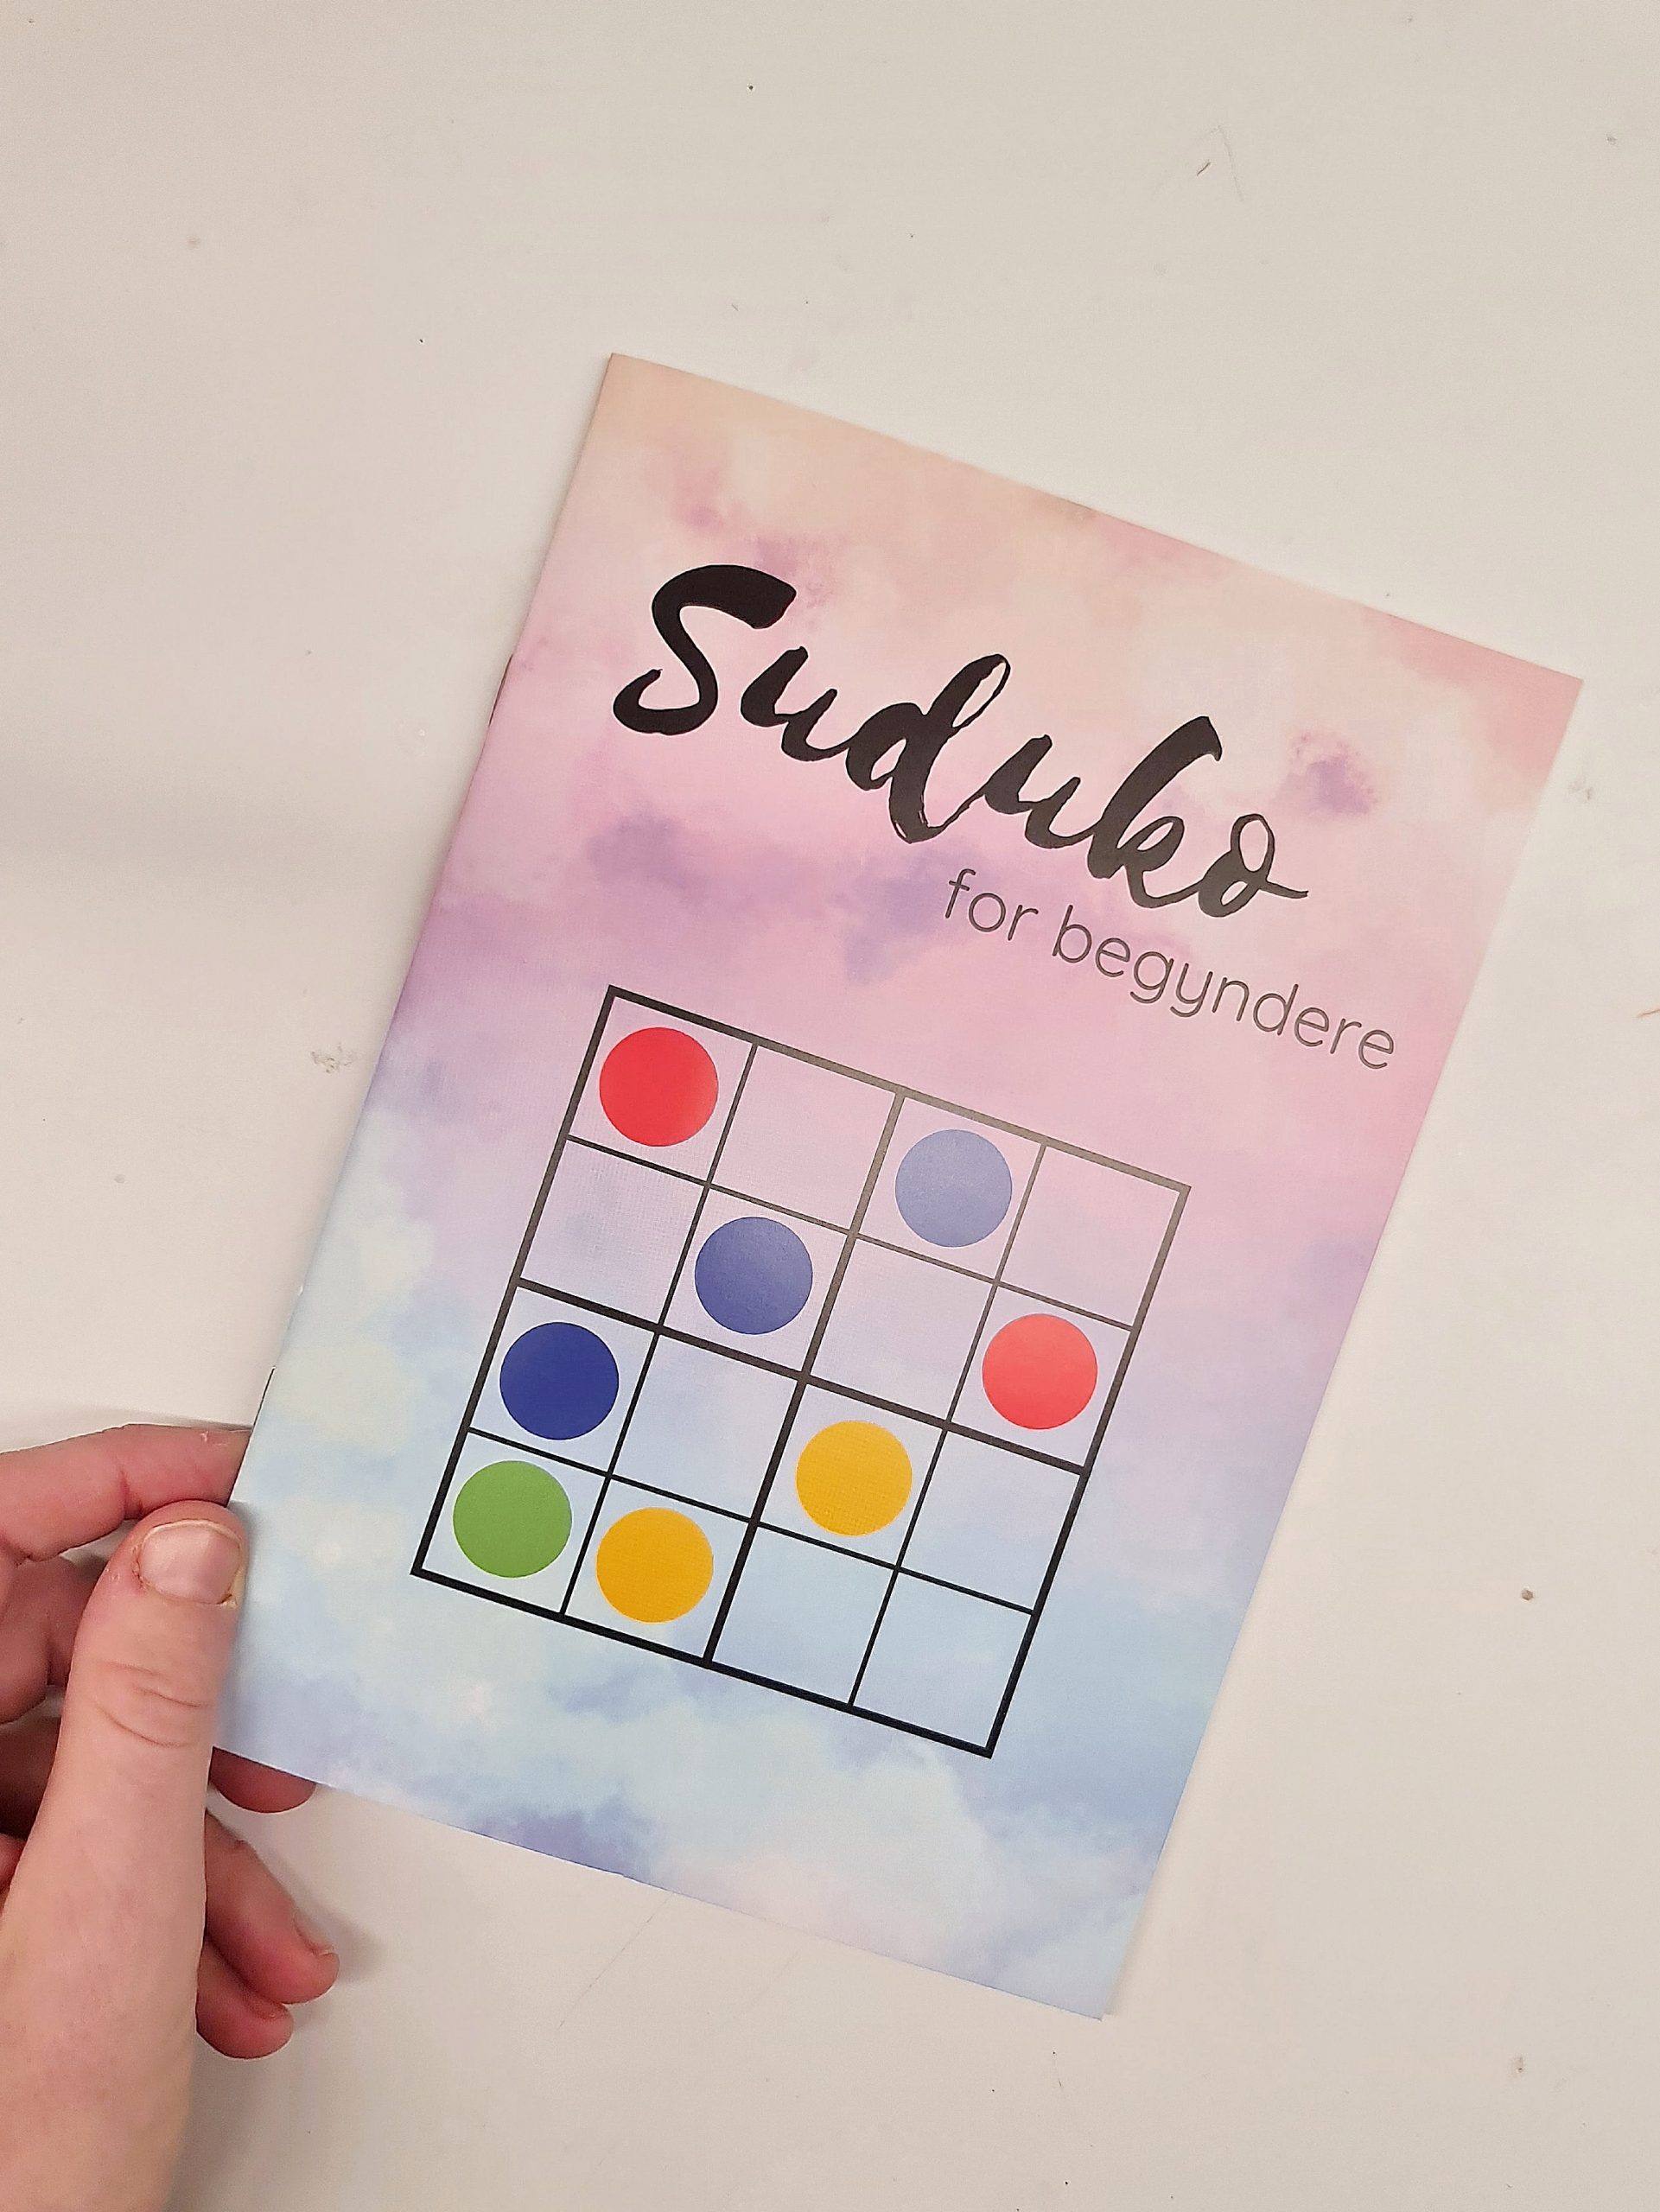 Billede af Sudoku for begyndere, 4x4 med farver